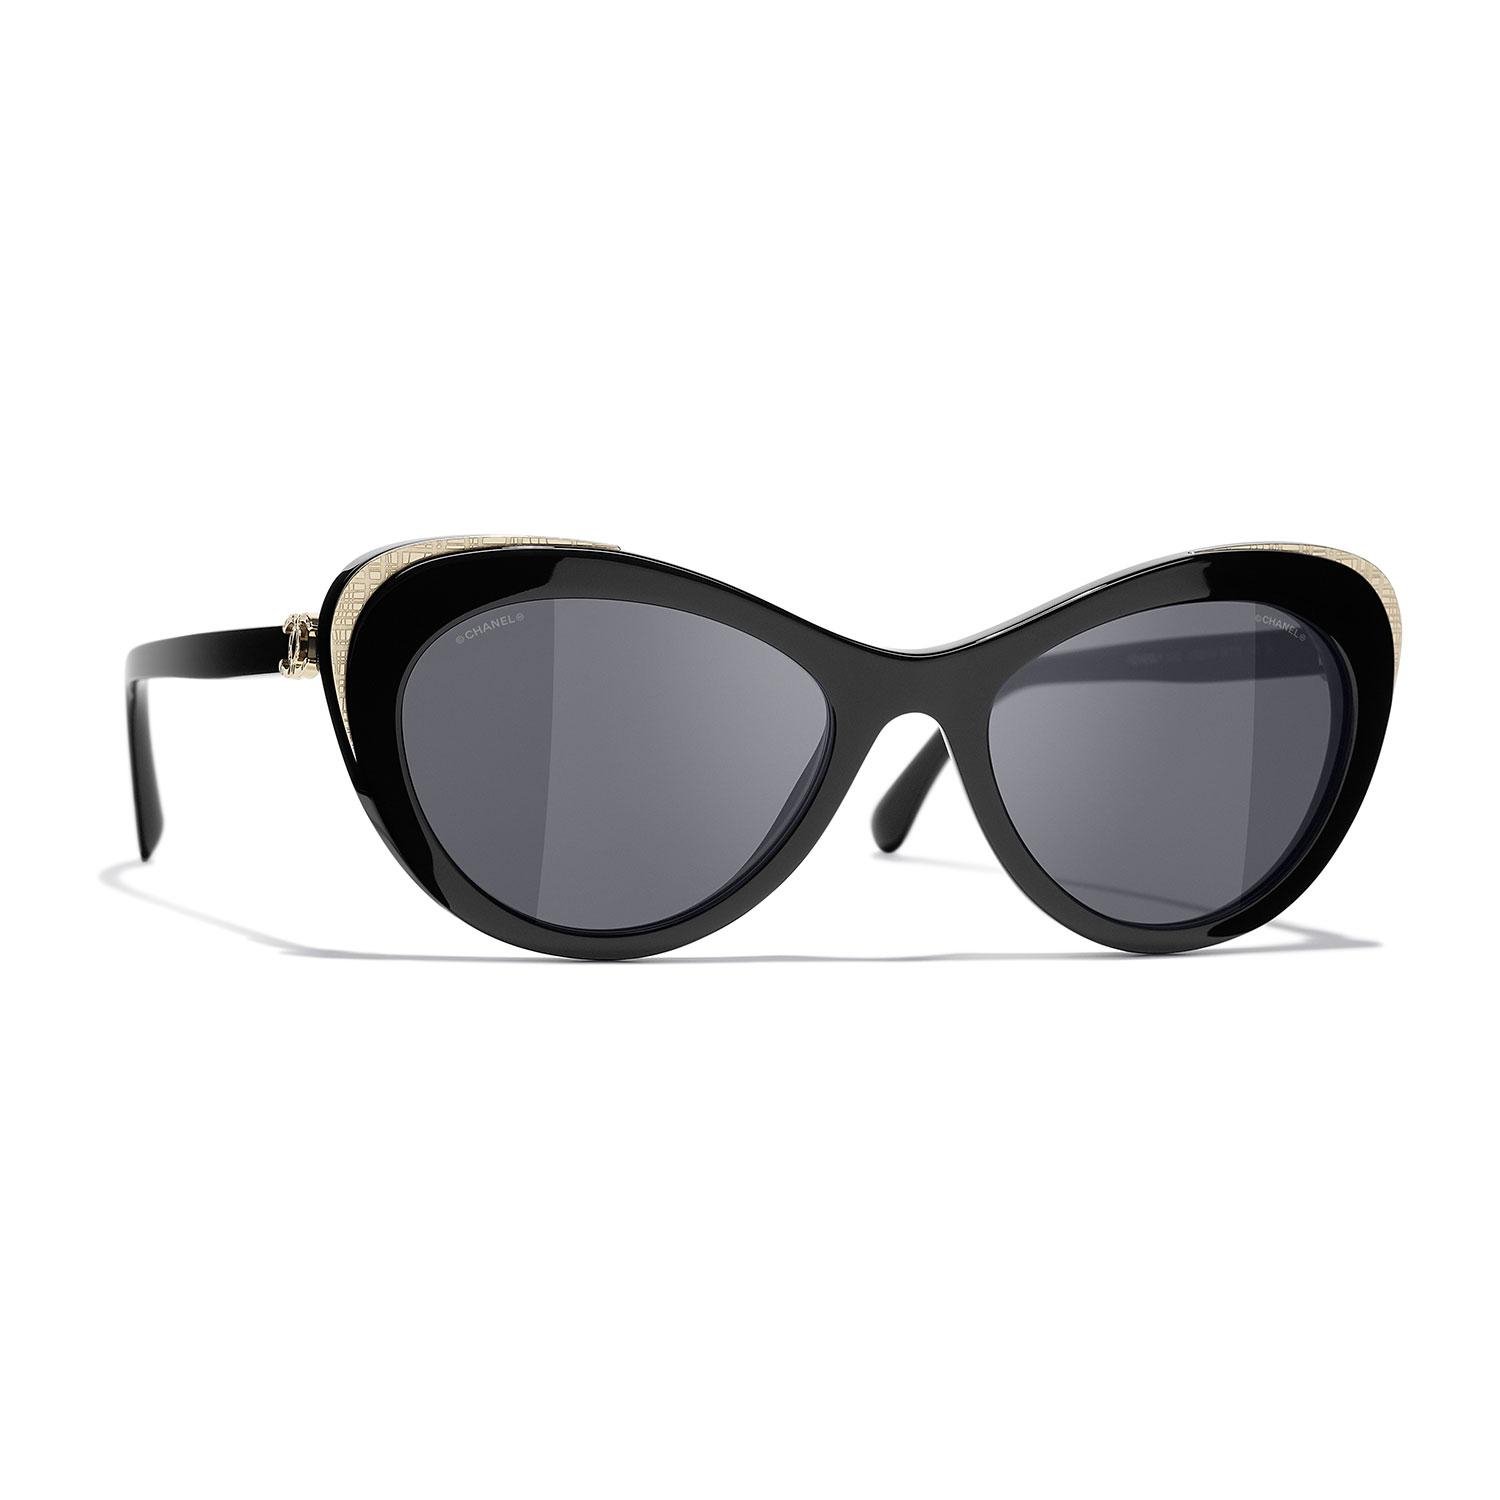 مجموعة أزياء شانيل - مجموعة نظارات خريف 2020 